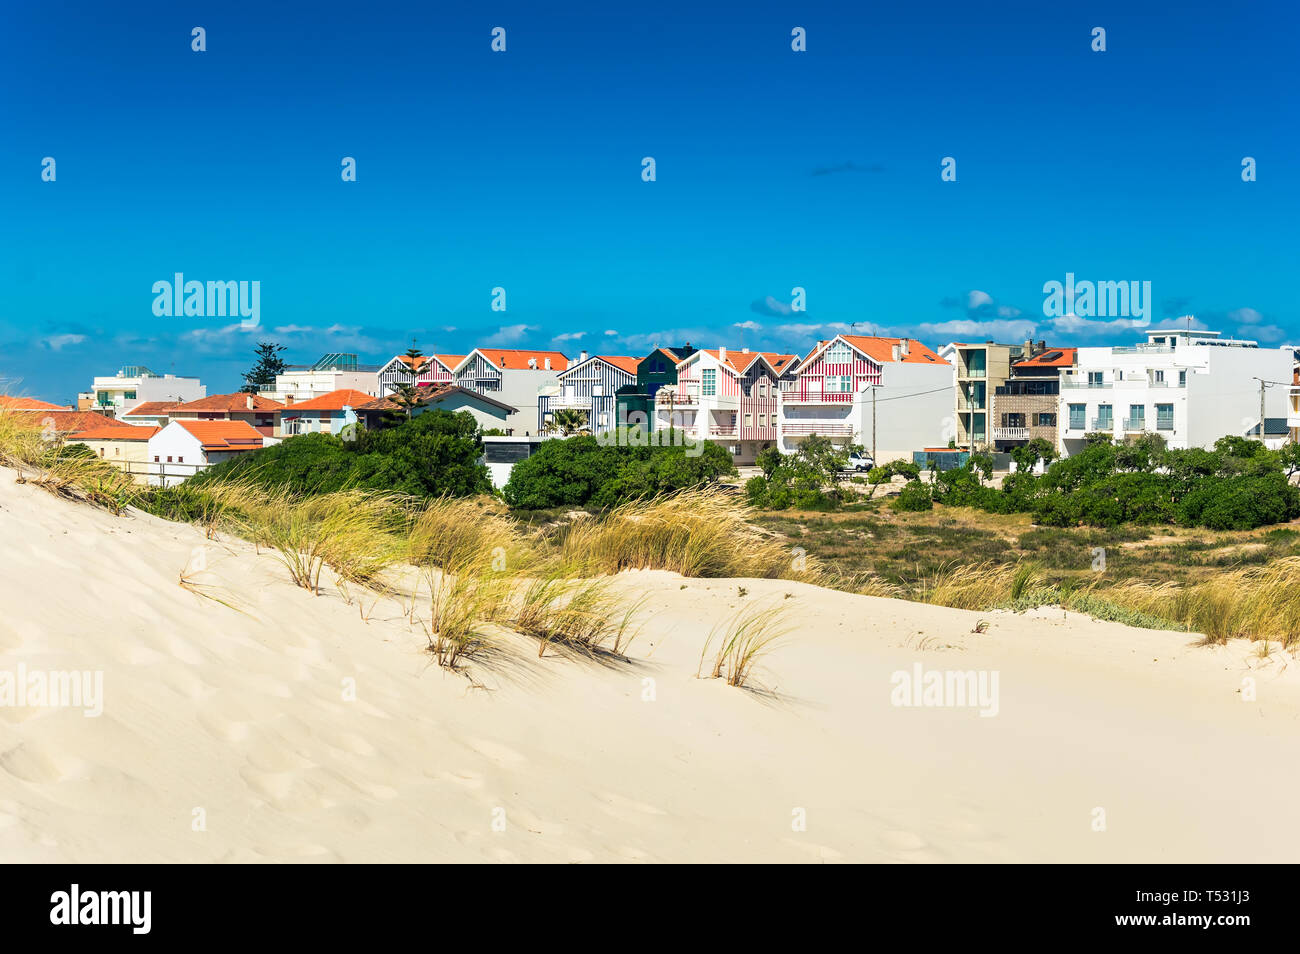 Costa Nova, Portugal : : plage des dunes de sable et des maisons à rayures colorées. Costa Nova do Prado est un village beach resort sur la côte atlantique près de Aveiro. Banque D'Images